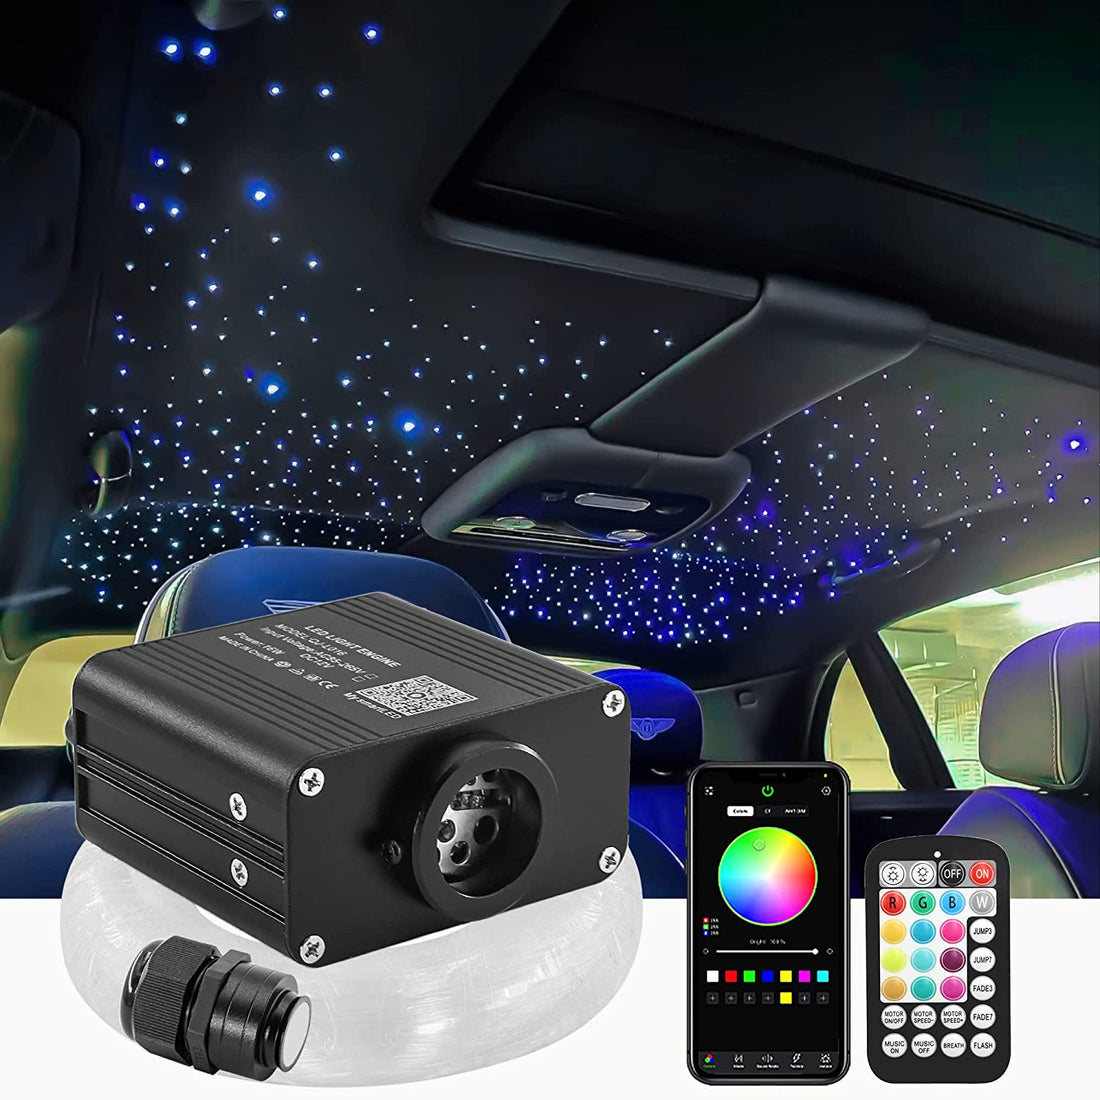 Akepo 16W Fiber Optic Lights for Car Truck's Ceilings